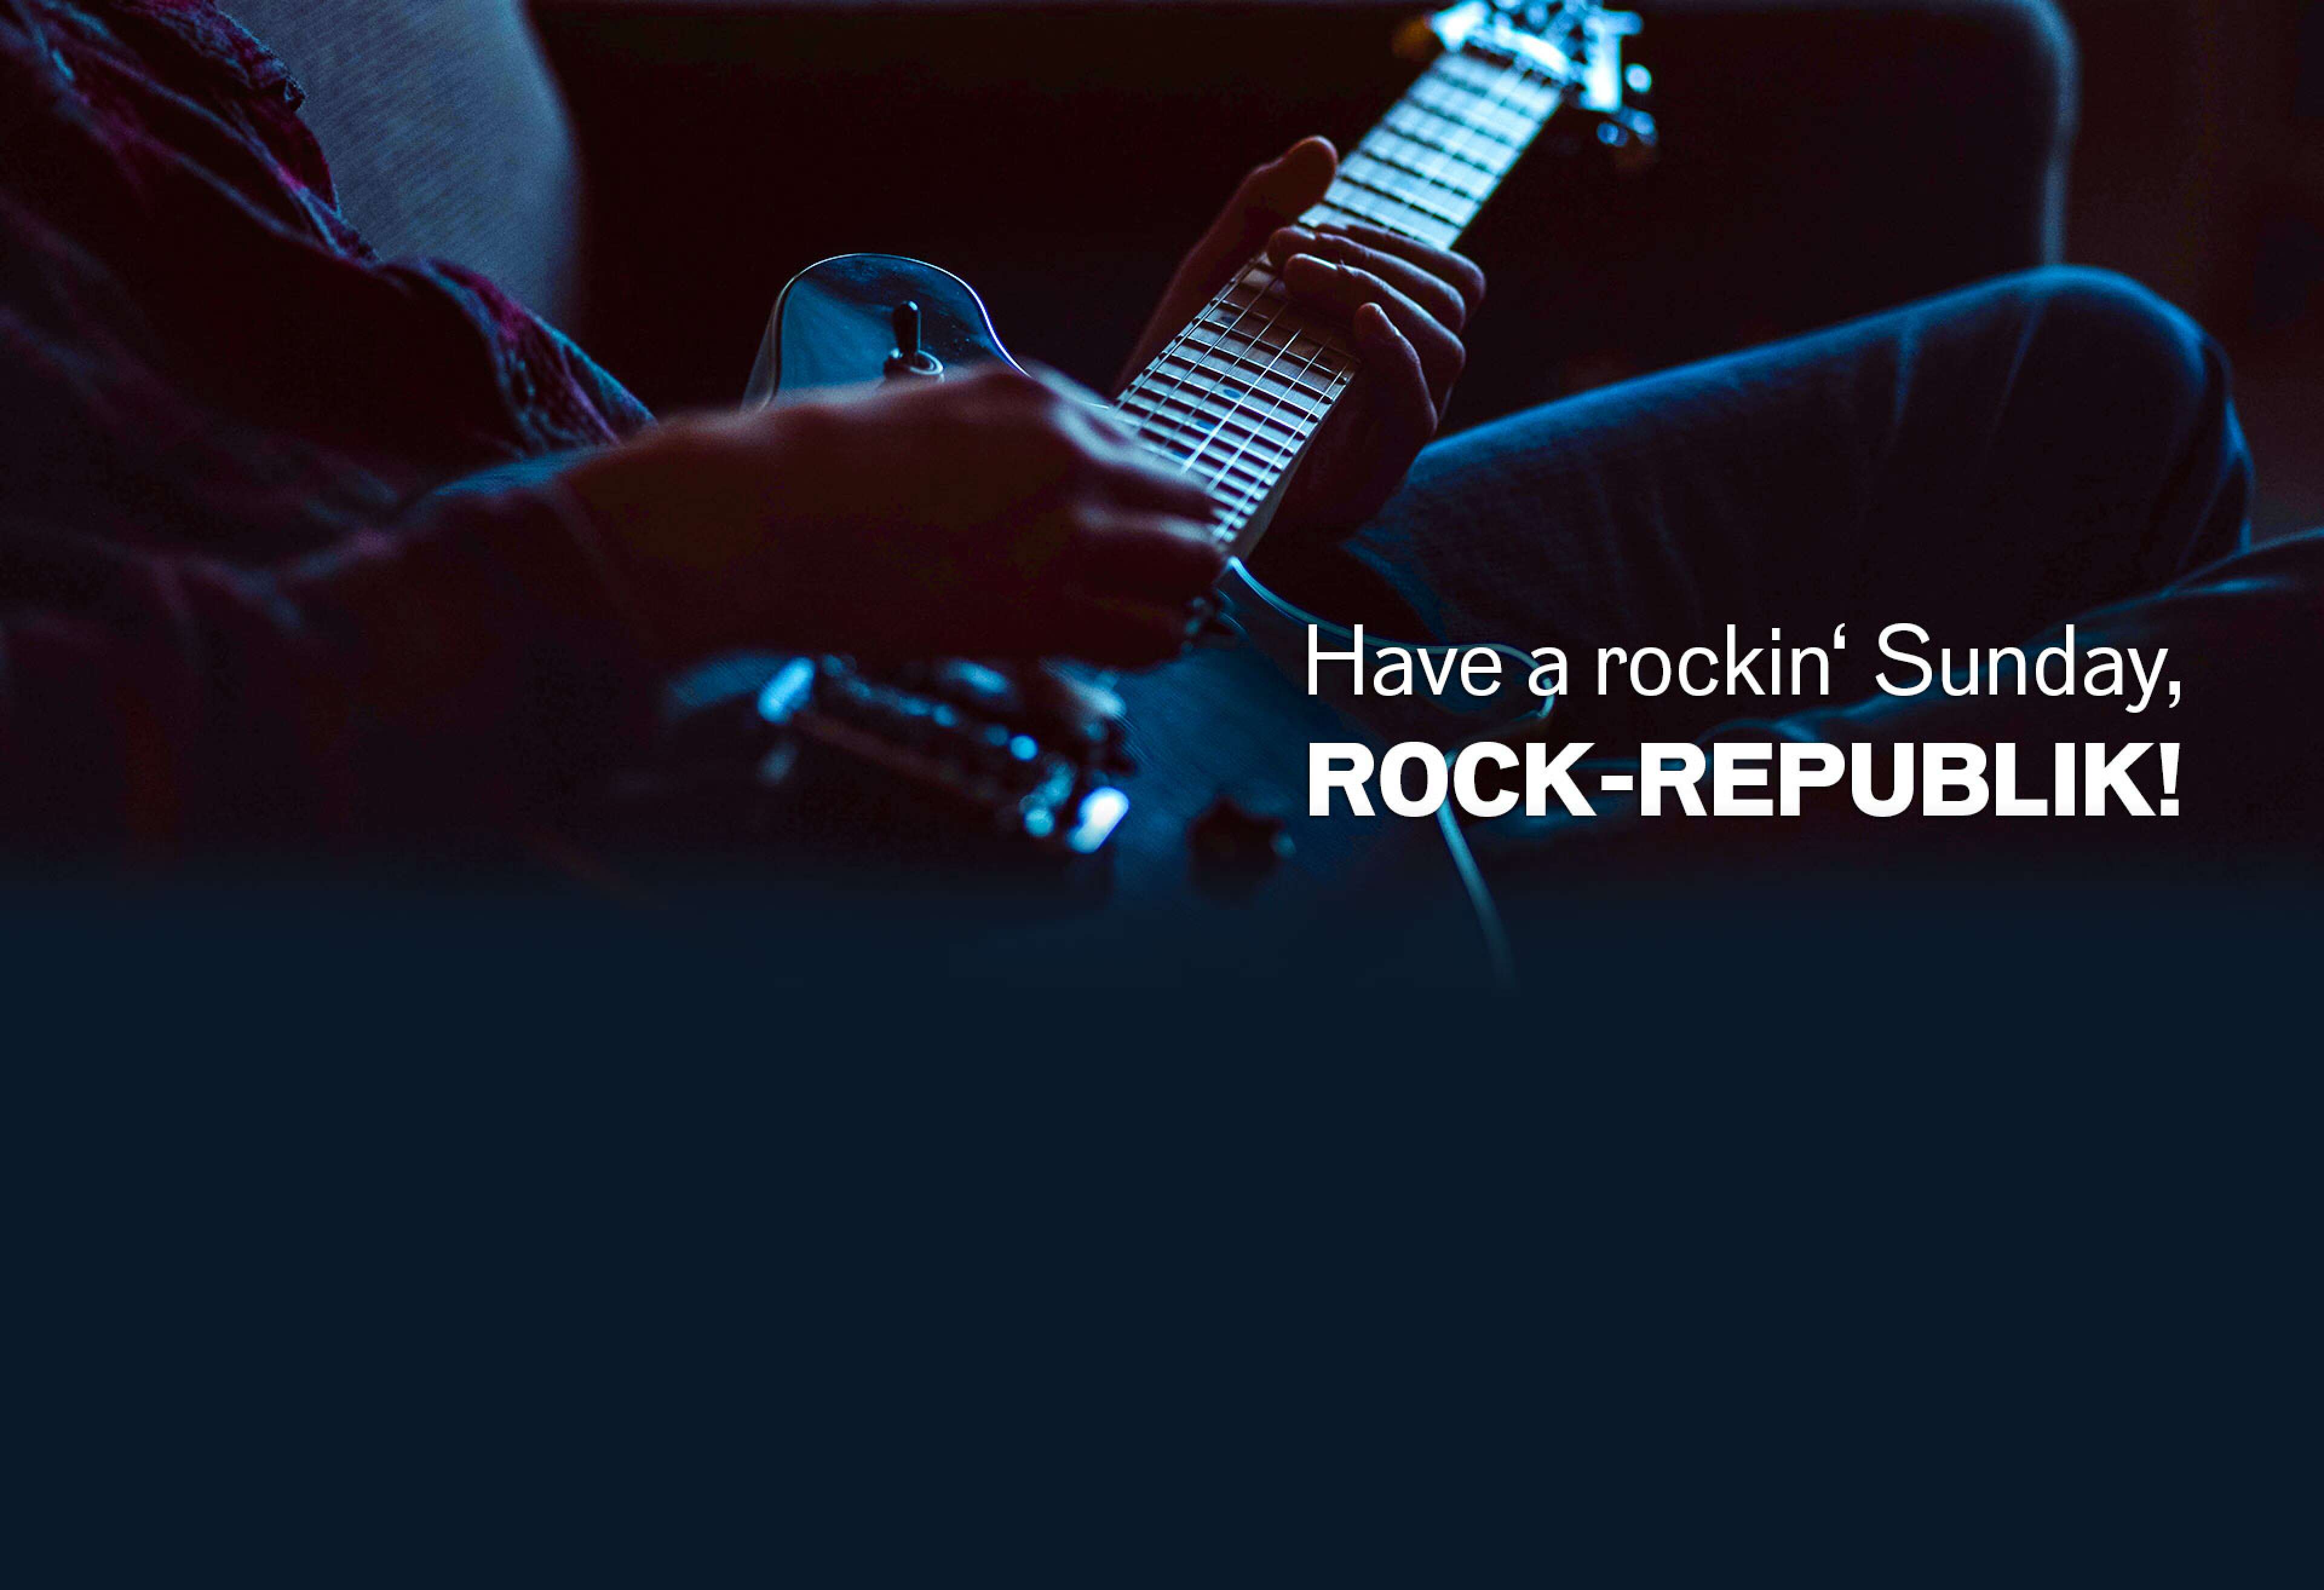 Mann mit Gitarre auf der Couch, Text: Have a rockin Sunday, Rock-Republik!